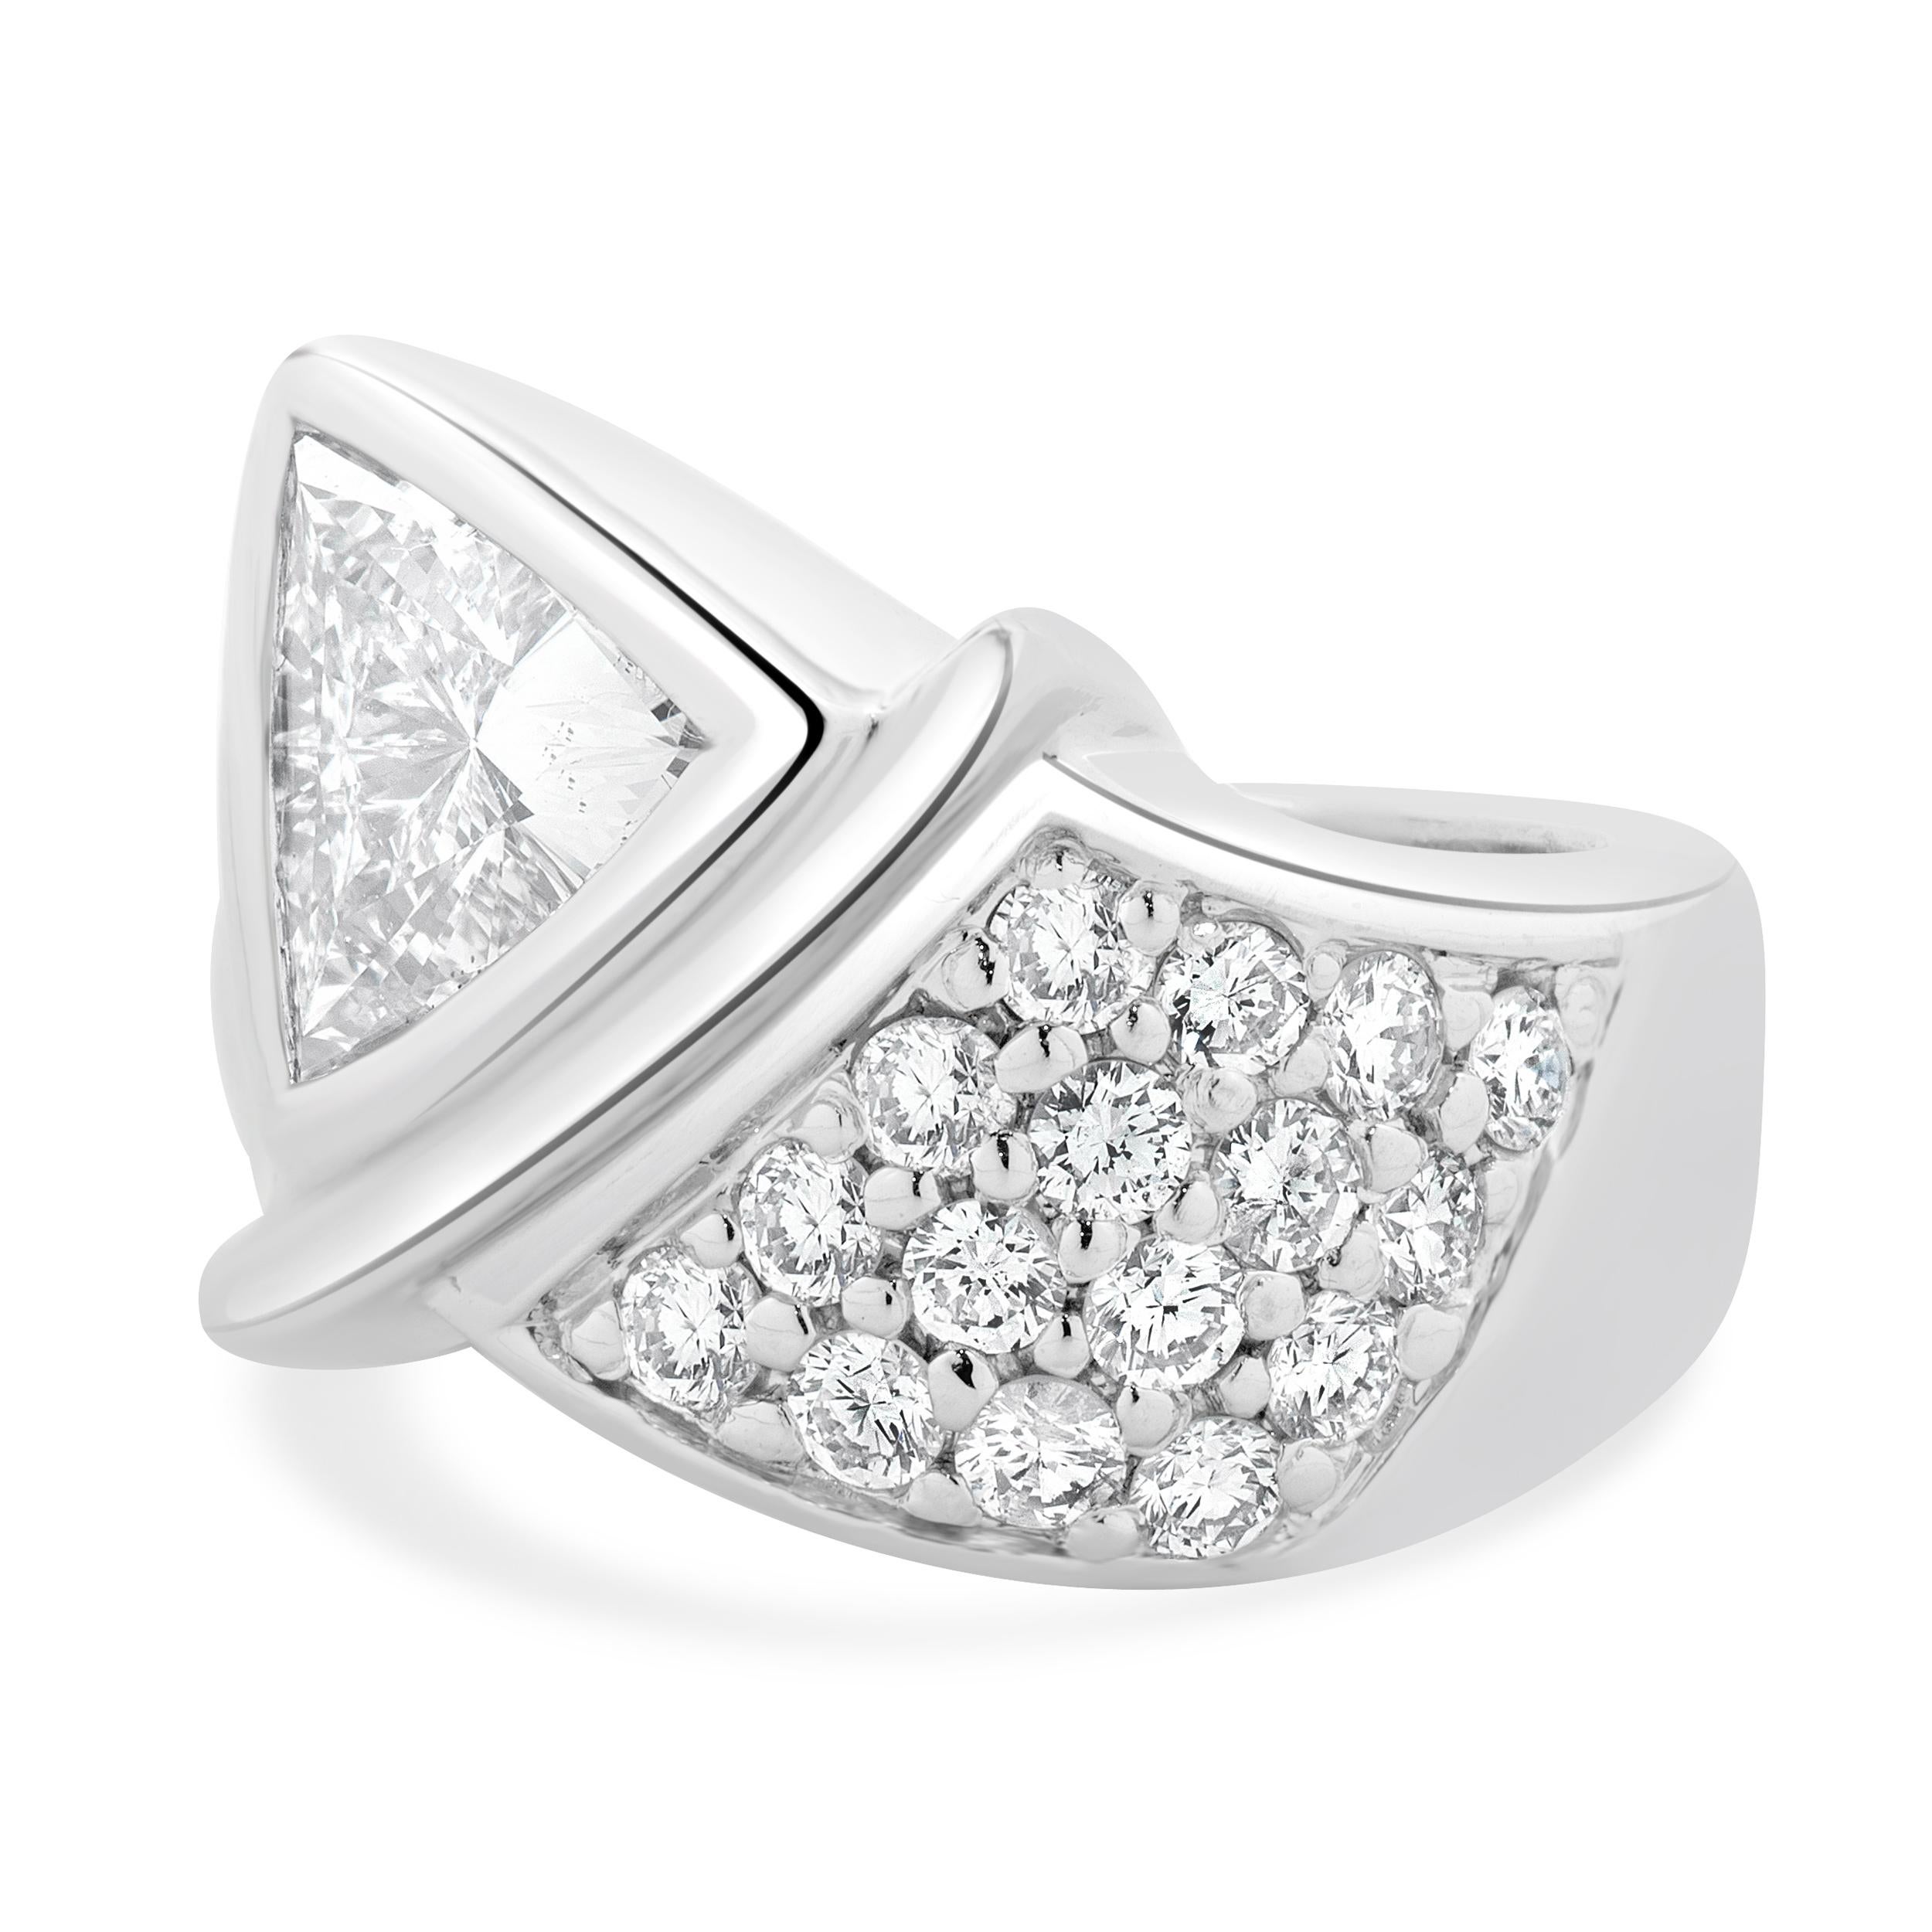 Designer: Benutzerdefiniert
MATERIAL: Platin
Diamant: 1 Billion Schliff = 1,55ct
Farbe: H
Klarheit: SI2
Diamant: 16 runde Diamanten im Brillantschliff = 0,64cttw
Farbe: G
Klarheit: SI1-2
Abmessungen: Die Ringspitze ist 16.5 mm breit.
Ringgröße: 6.25